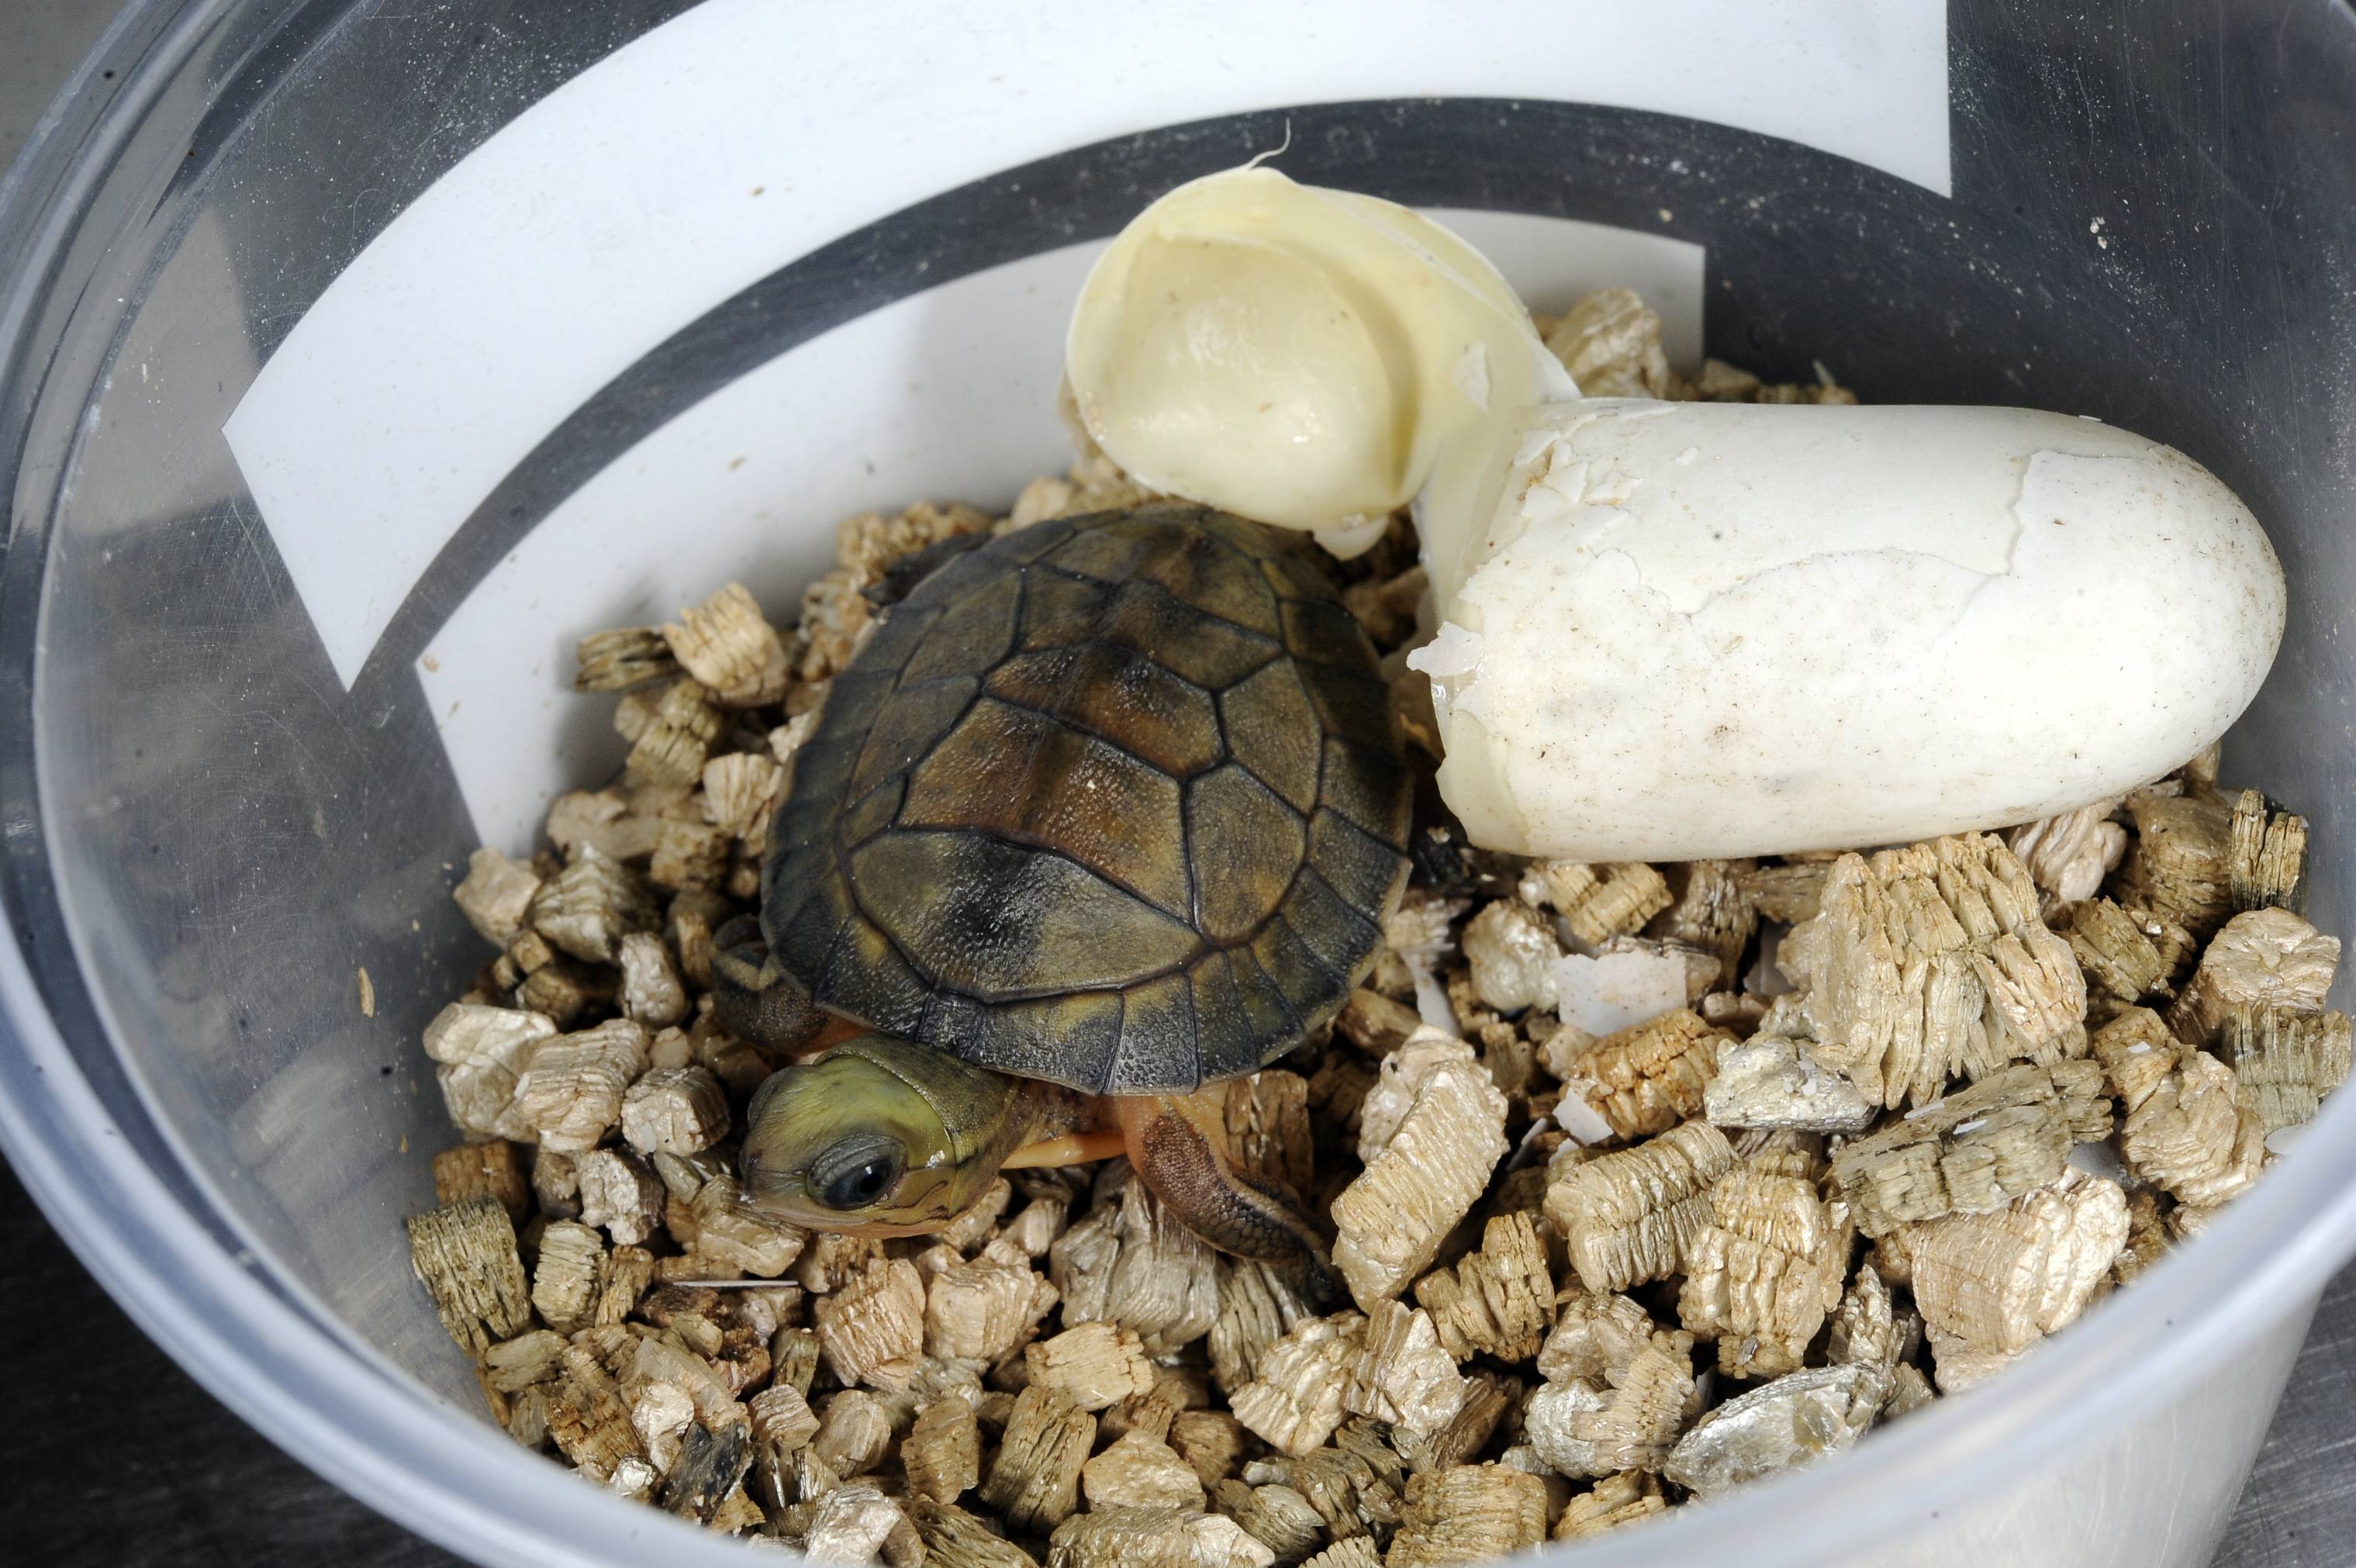 Размножение красноухих черепах: спаривание и разведение в домашних условиях (видео)